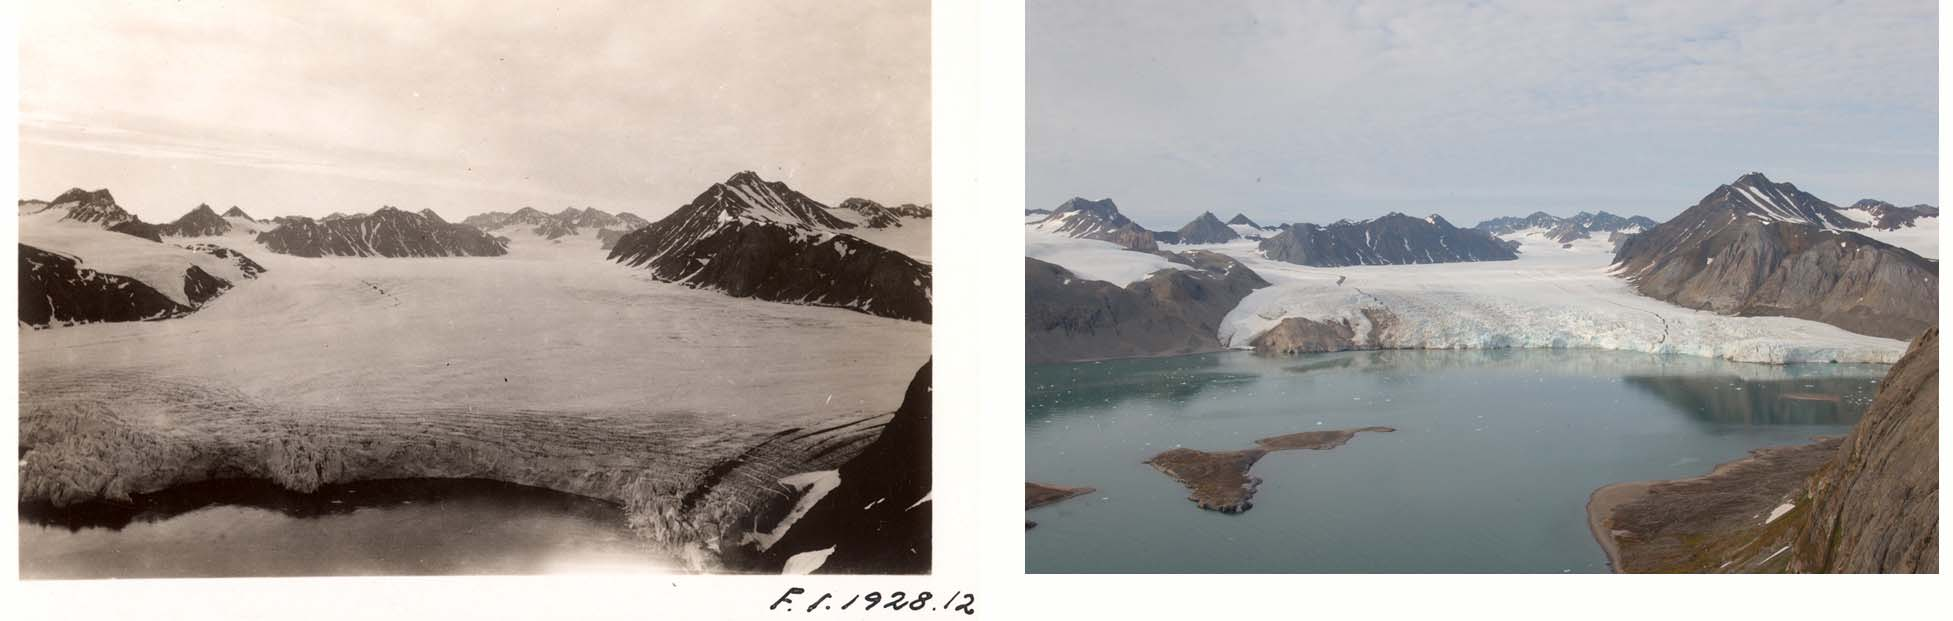 Eksempel på tilbaketrekning av isbreer i